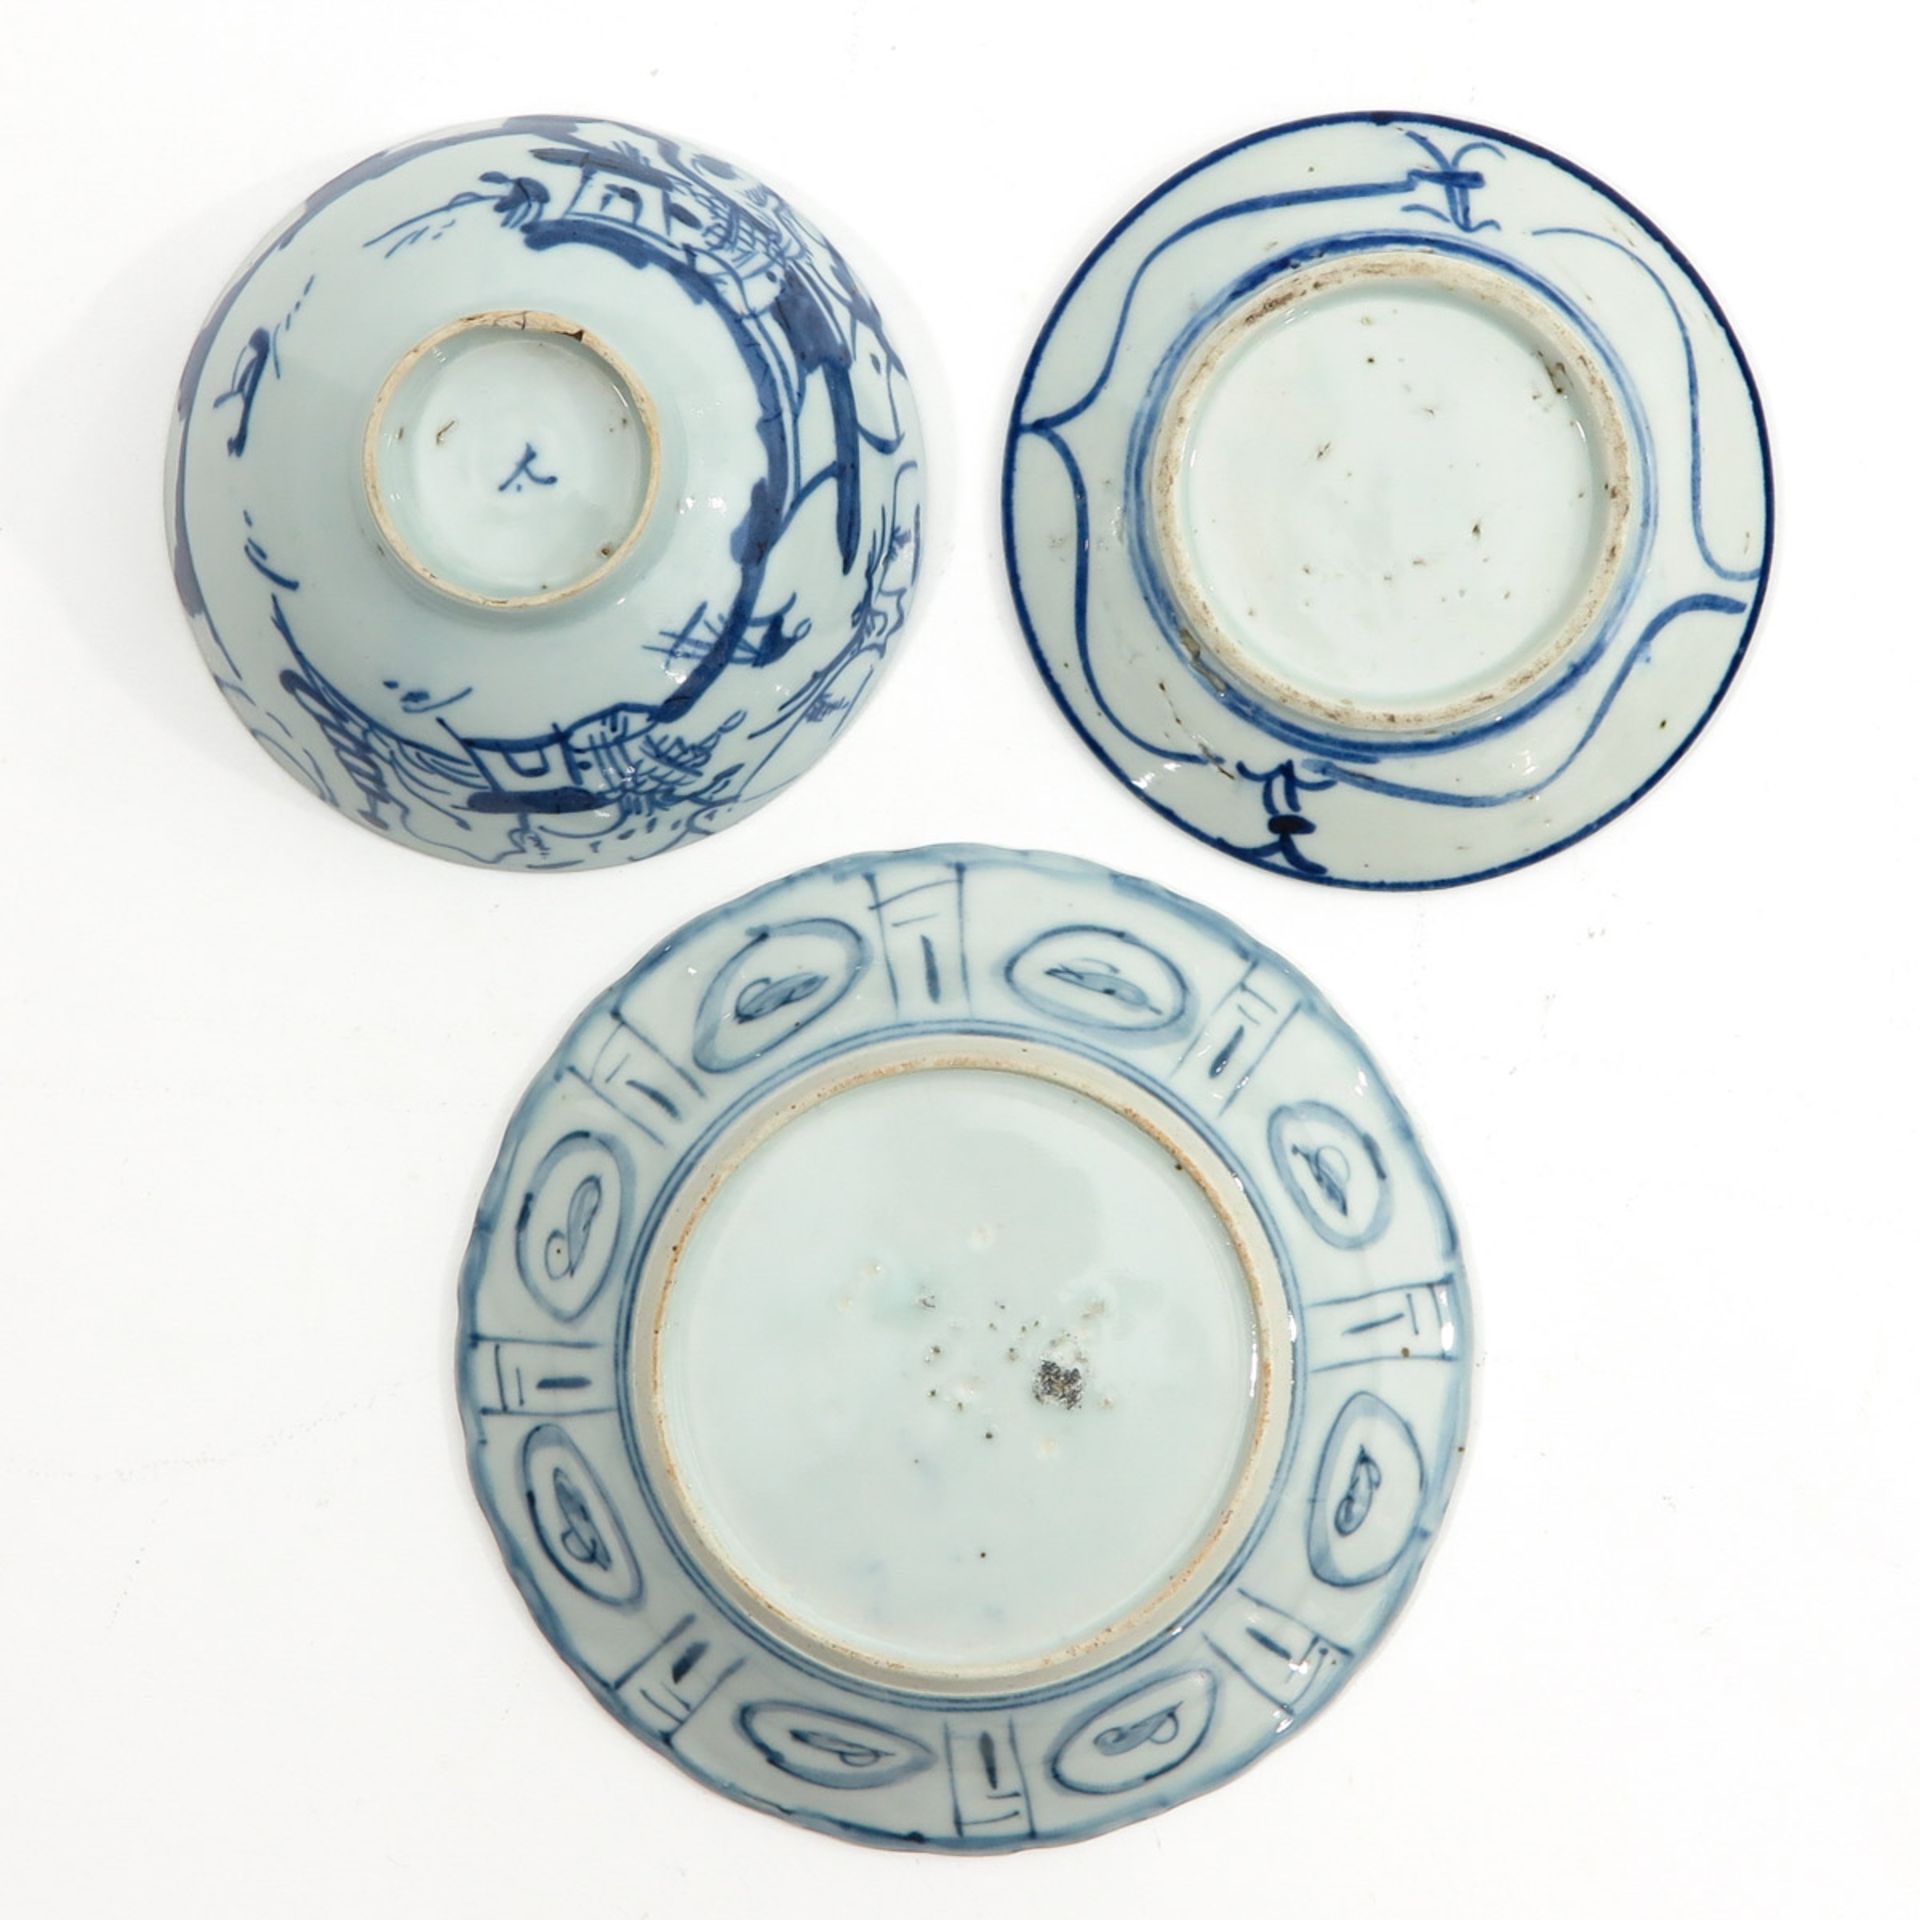 A Diverse Collection of Porcelain - Bild 6 aus 10